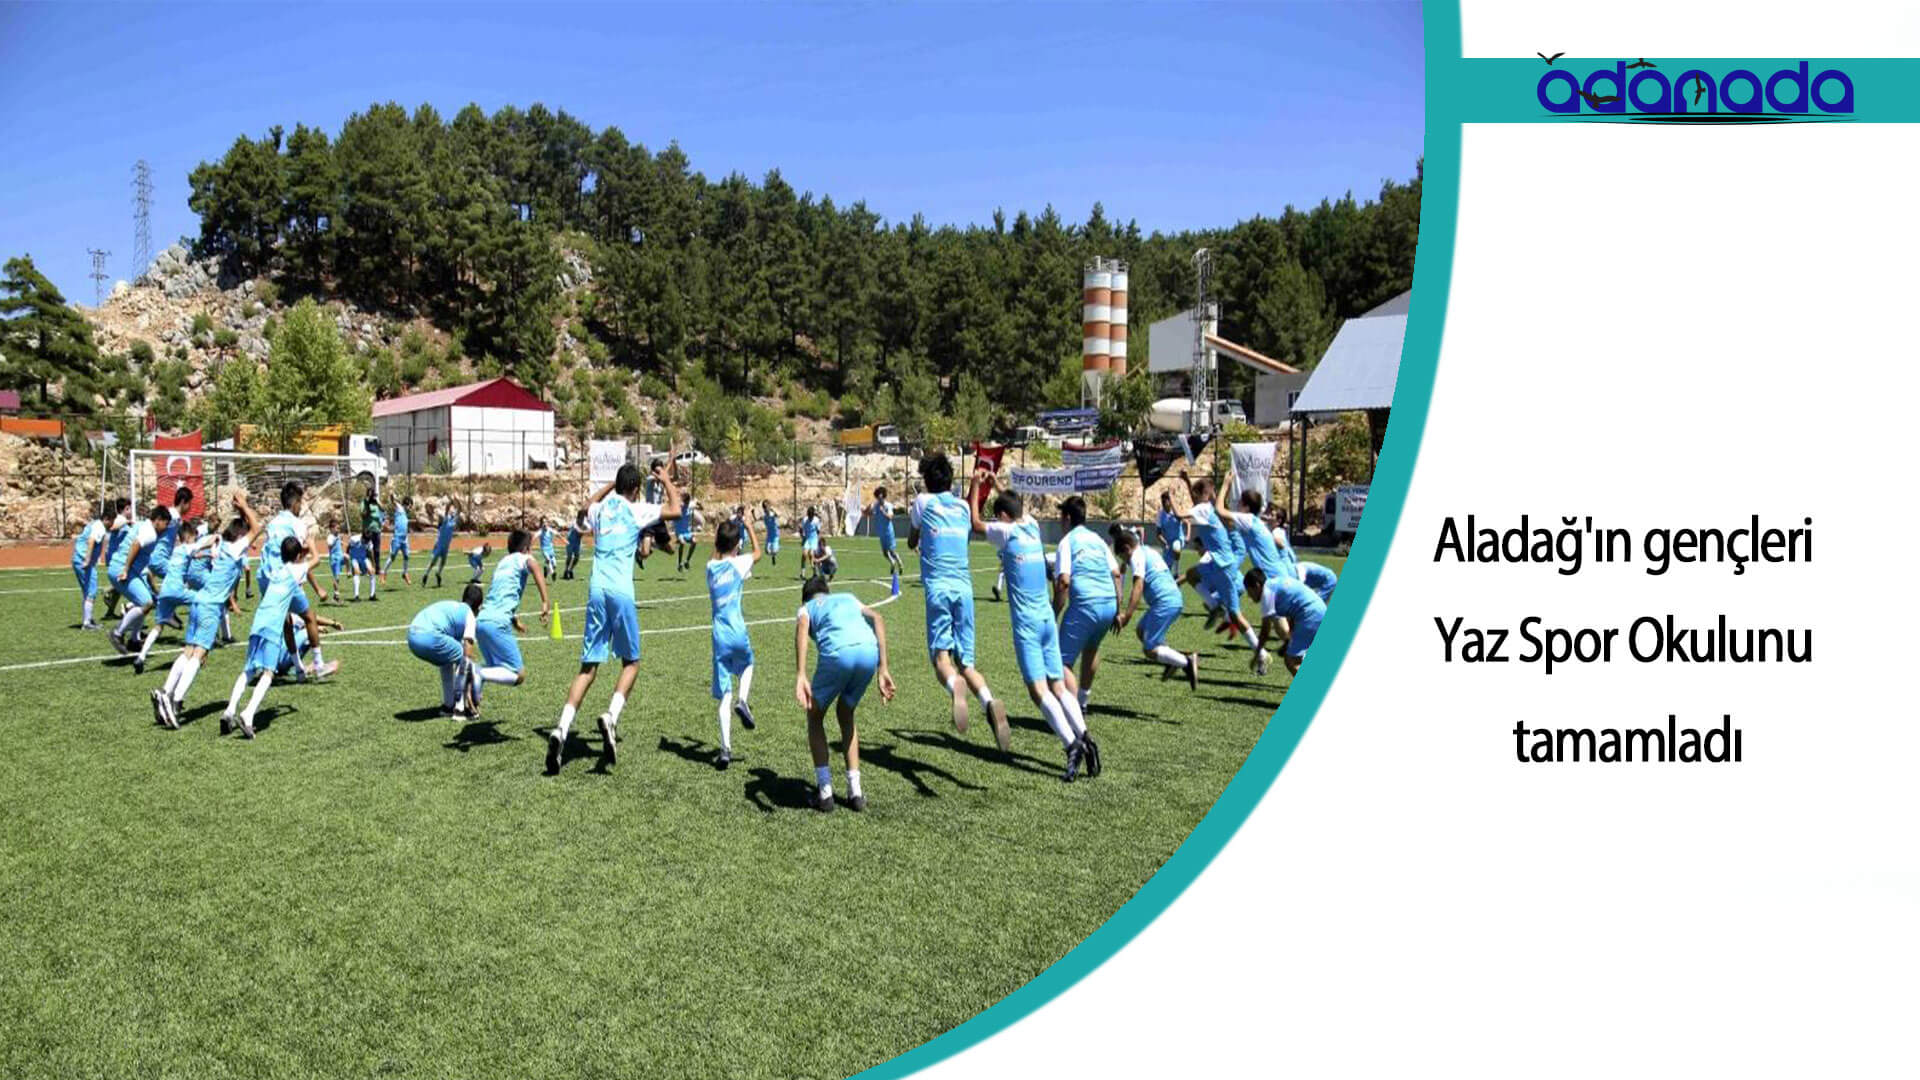 Aladağ’ın gençleri Yaz Spor Okulu’nu tamamladı